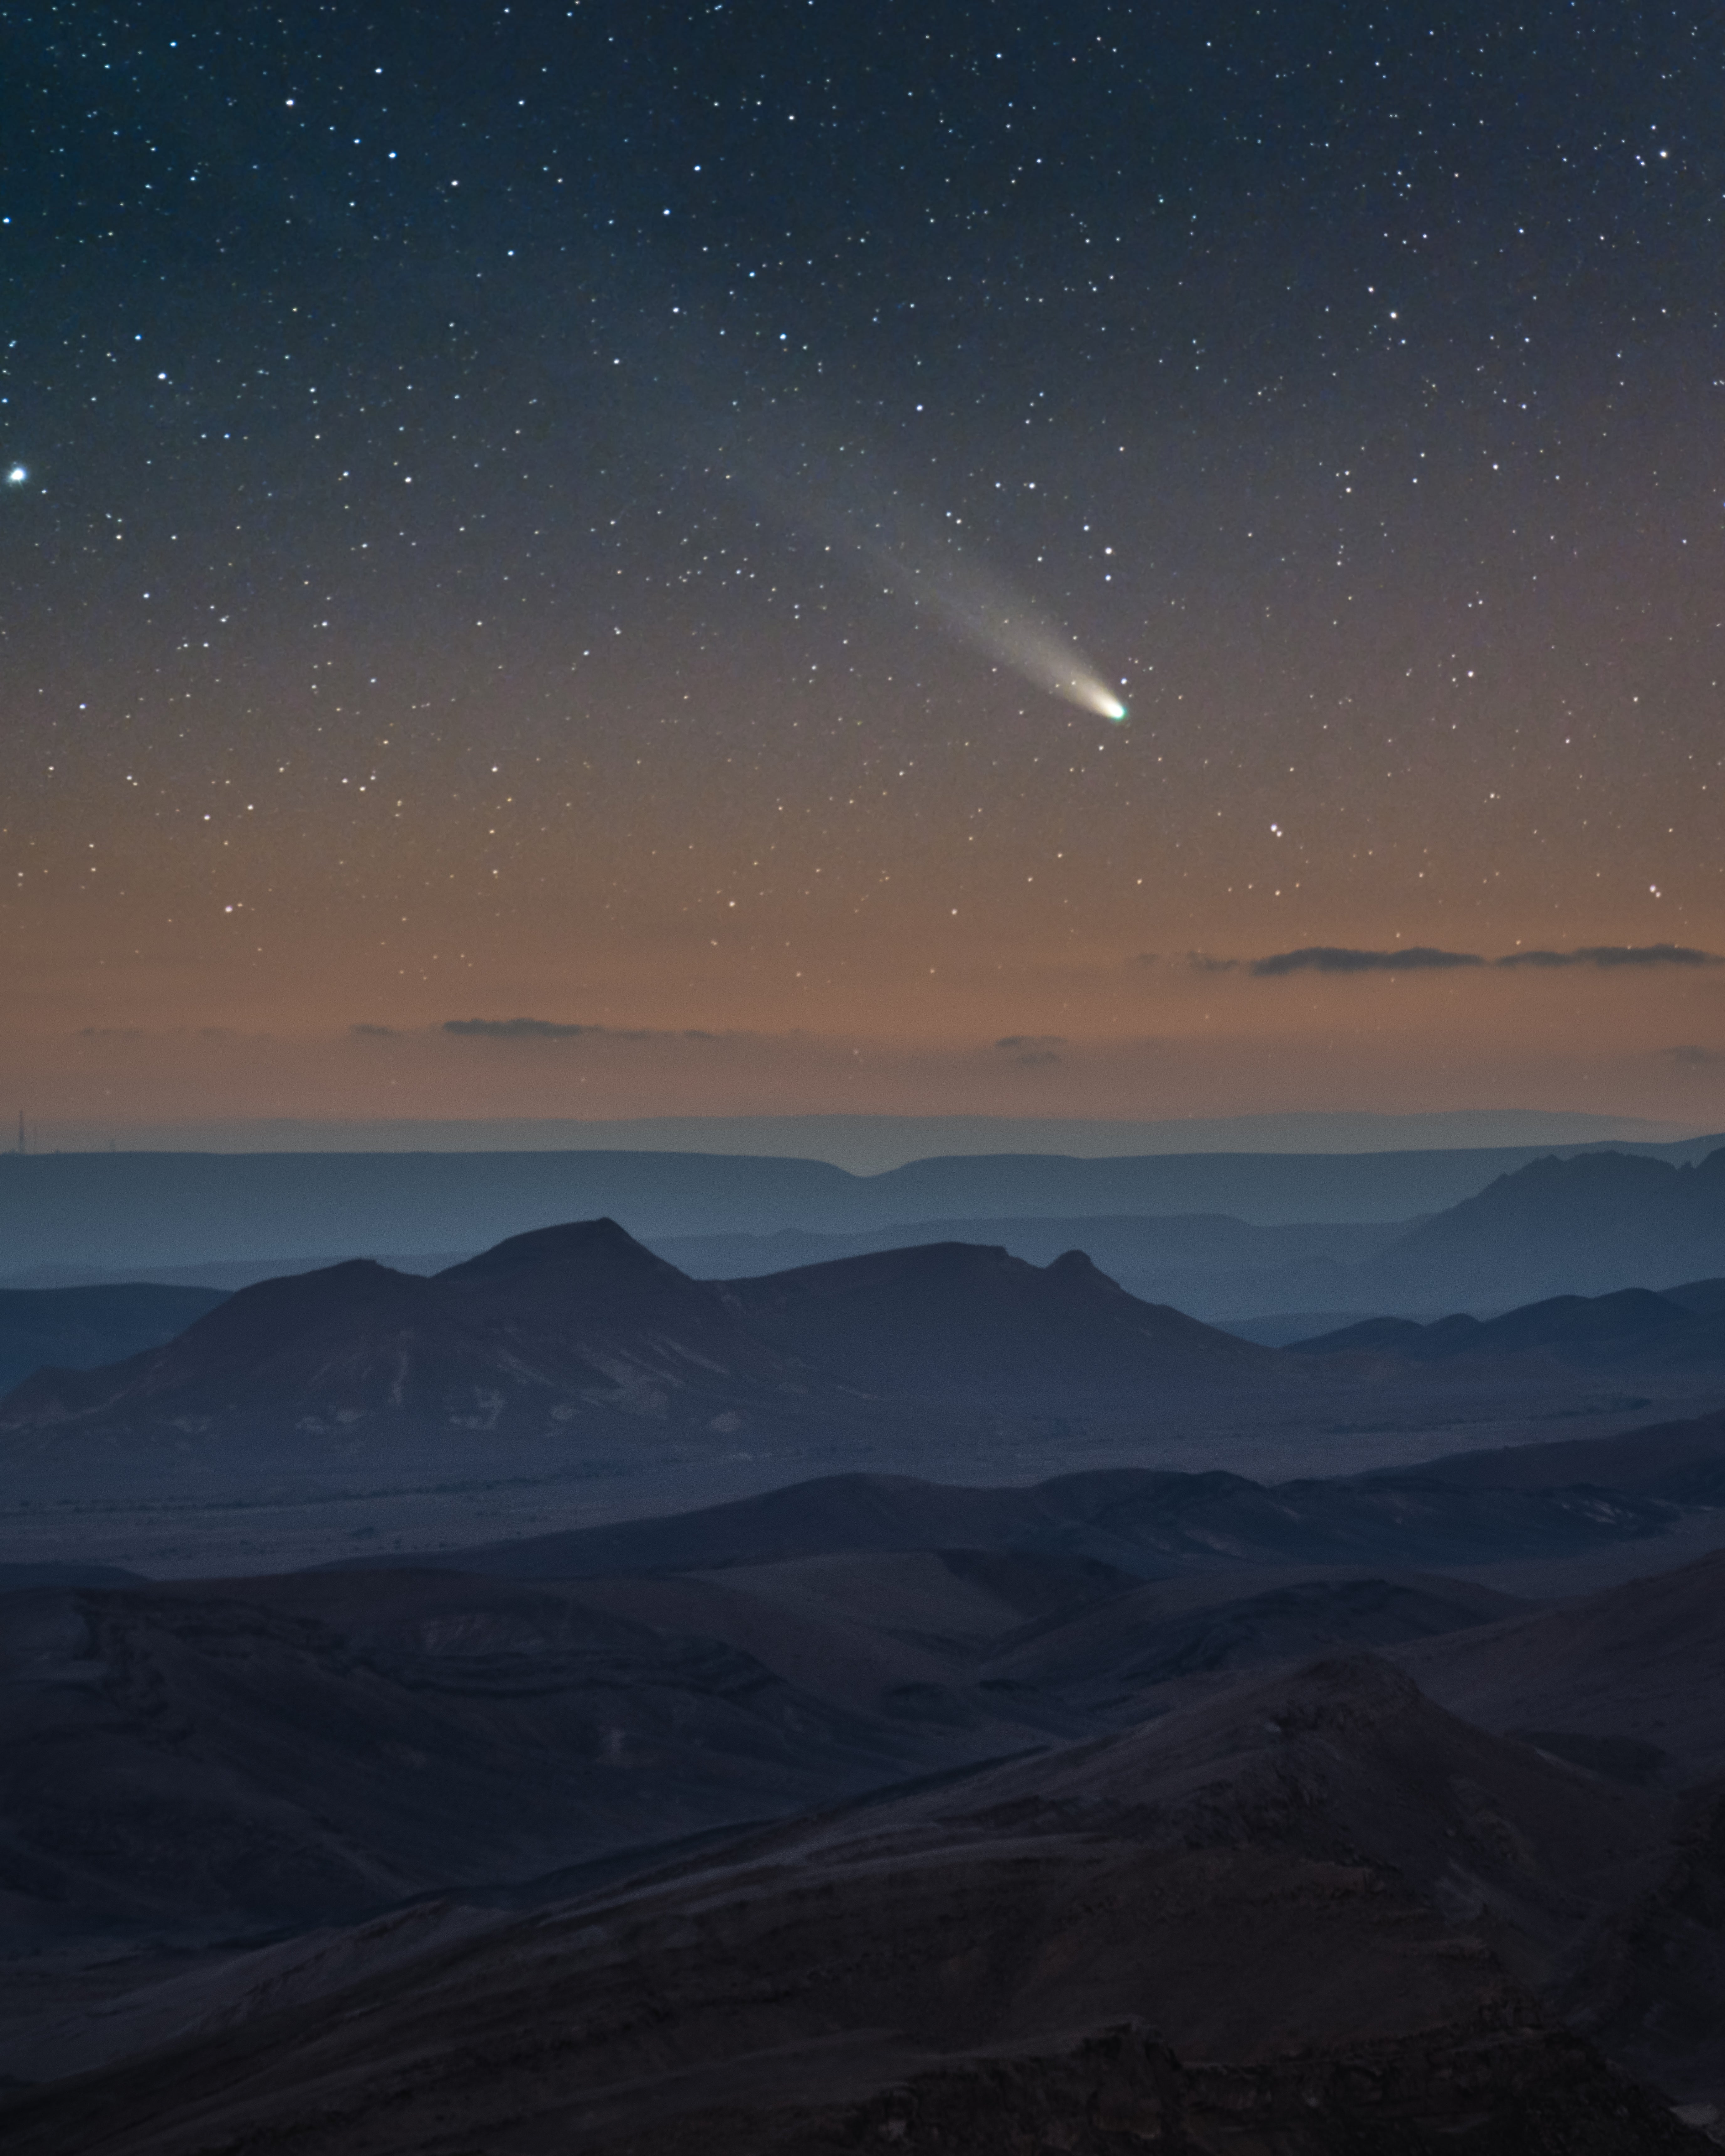 A comet over the Negev desert. (Photo: Alex Savenok)